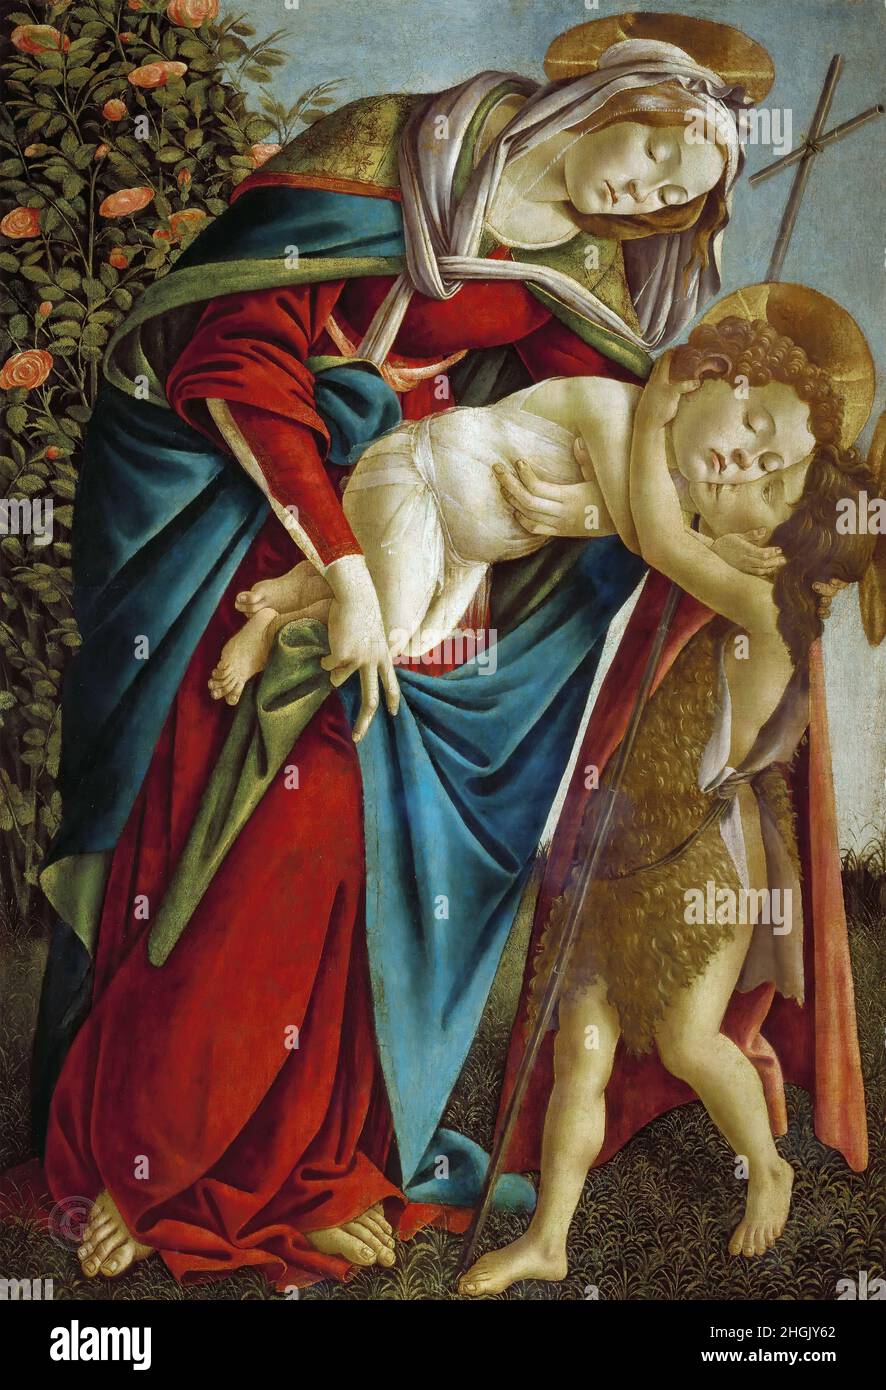 Palazzo Pitti, Galleria Palatina - Madonna con Bambino e San Giovannino - 1505c. - oil on canvas 134 x 92 cm - Botticelli Sandro Stock Photo